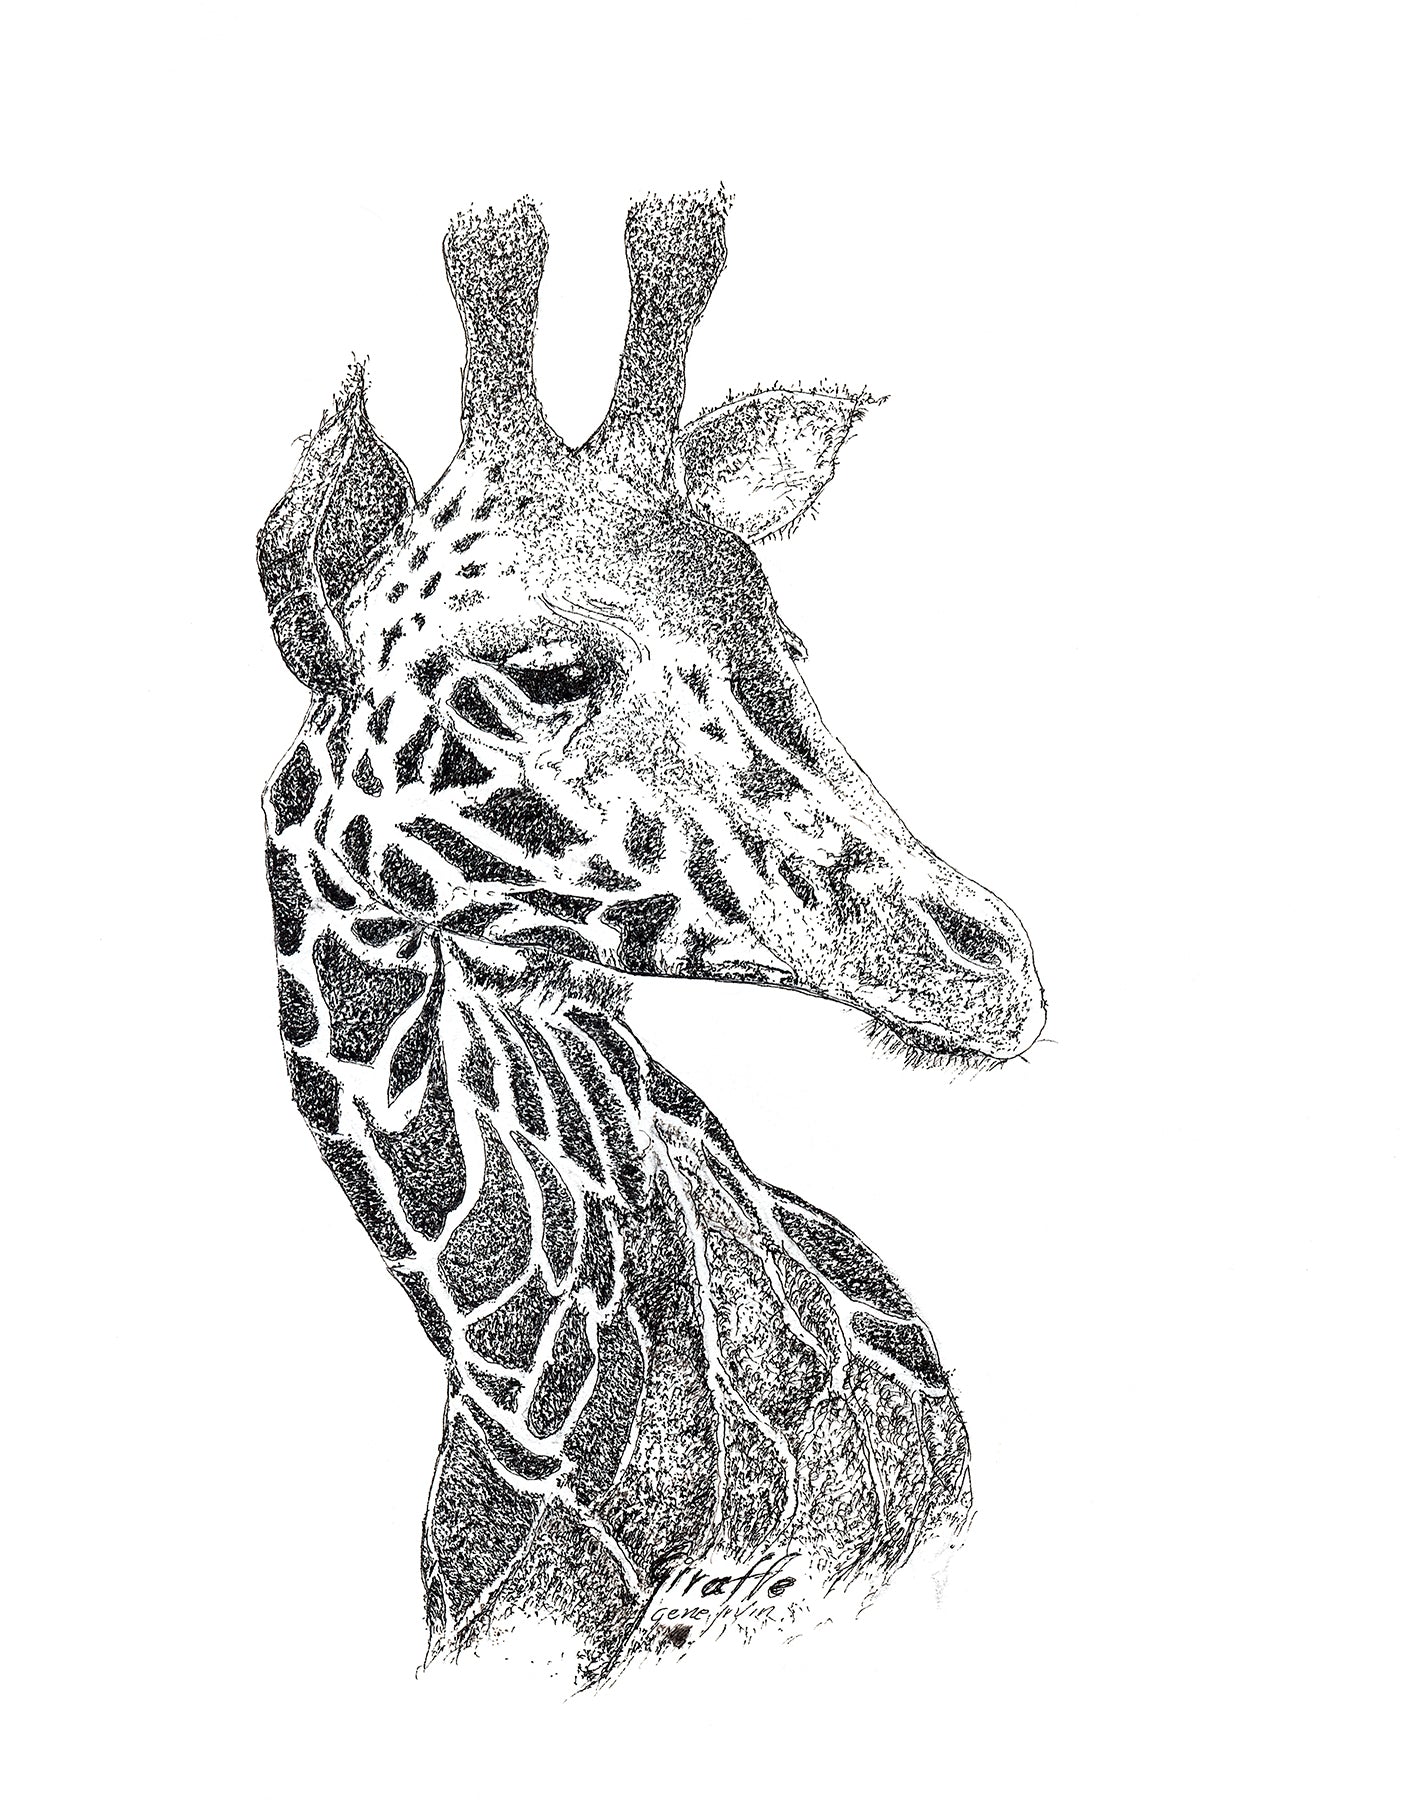 Giraffe Framed Print - Gene's Pen & Ink